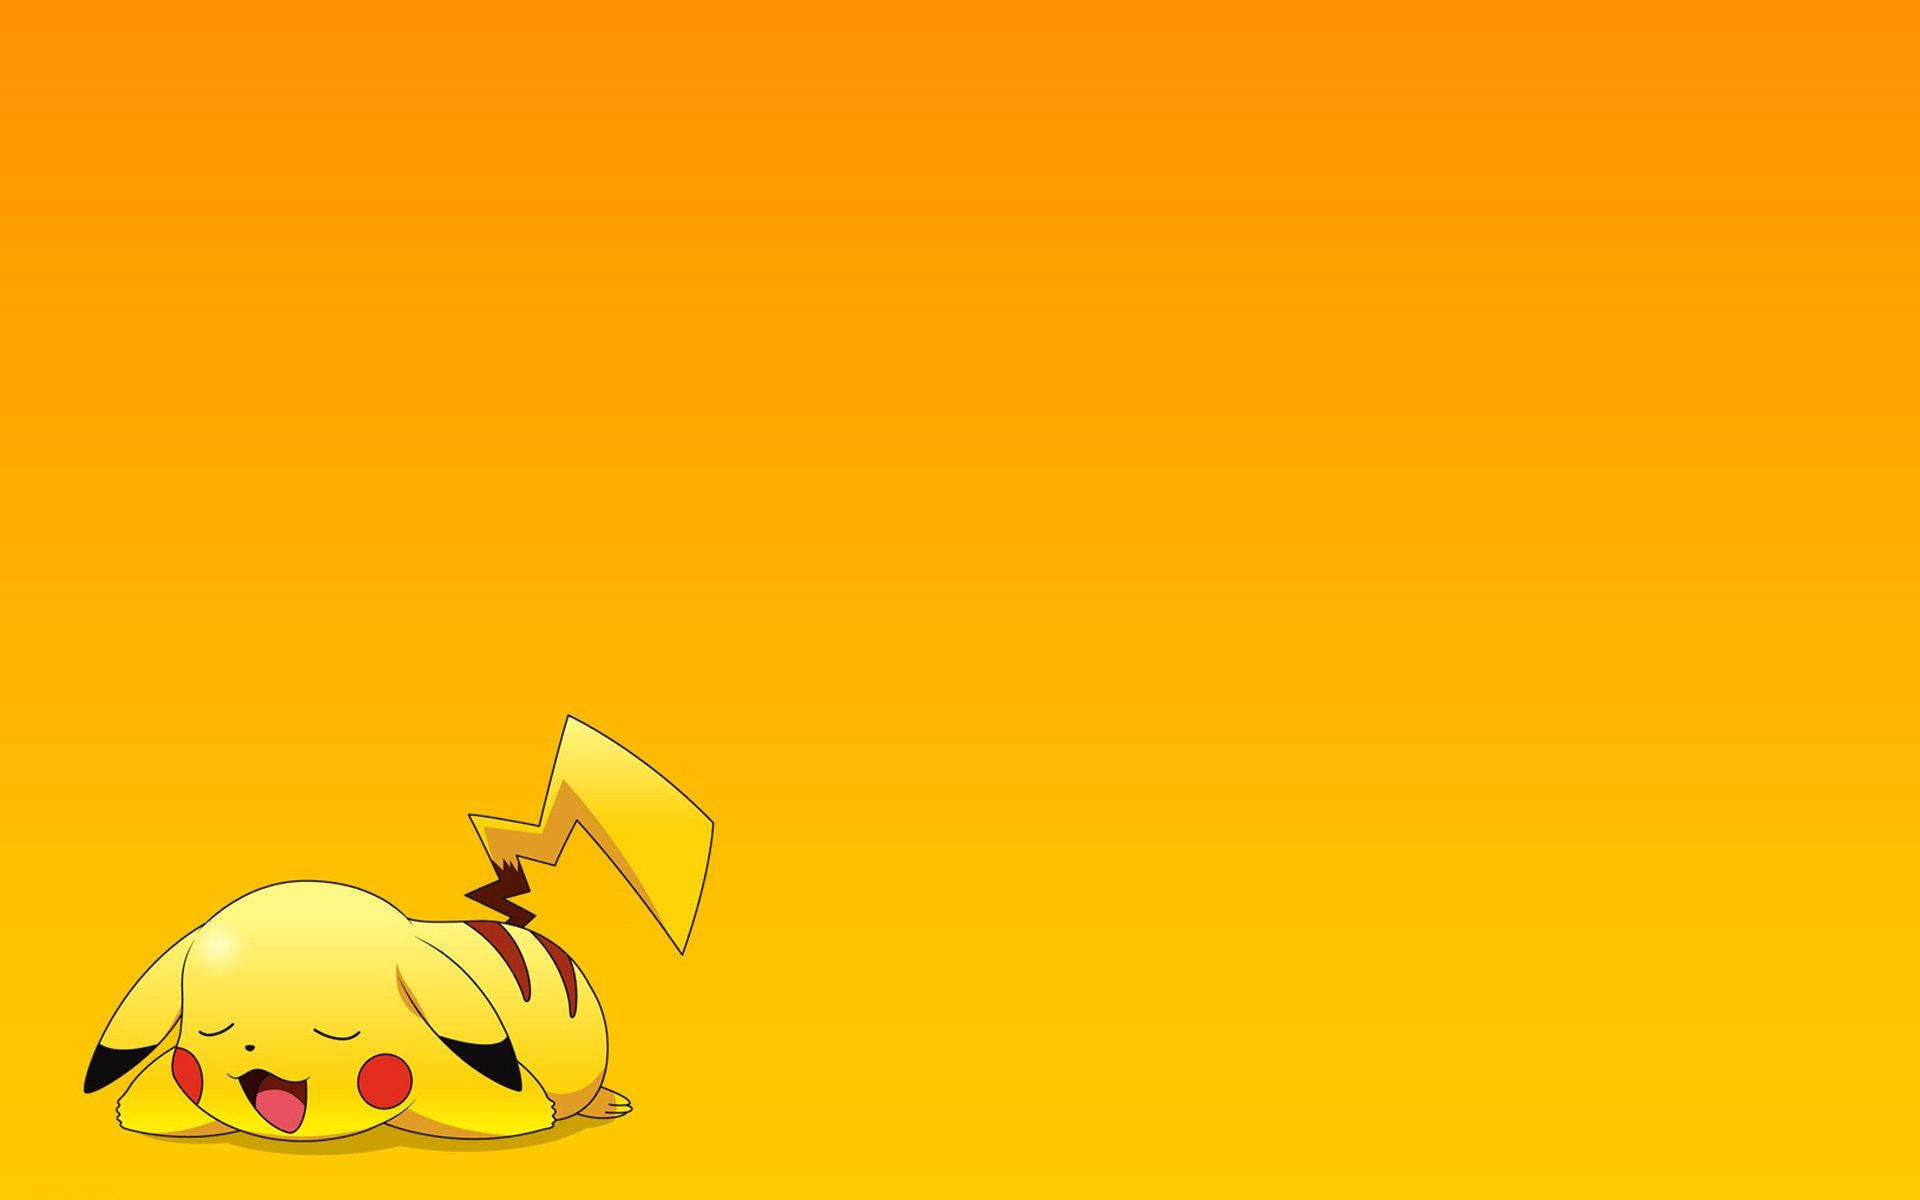 Pikachu 3d Soundly Resting Pokémon Background